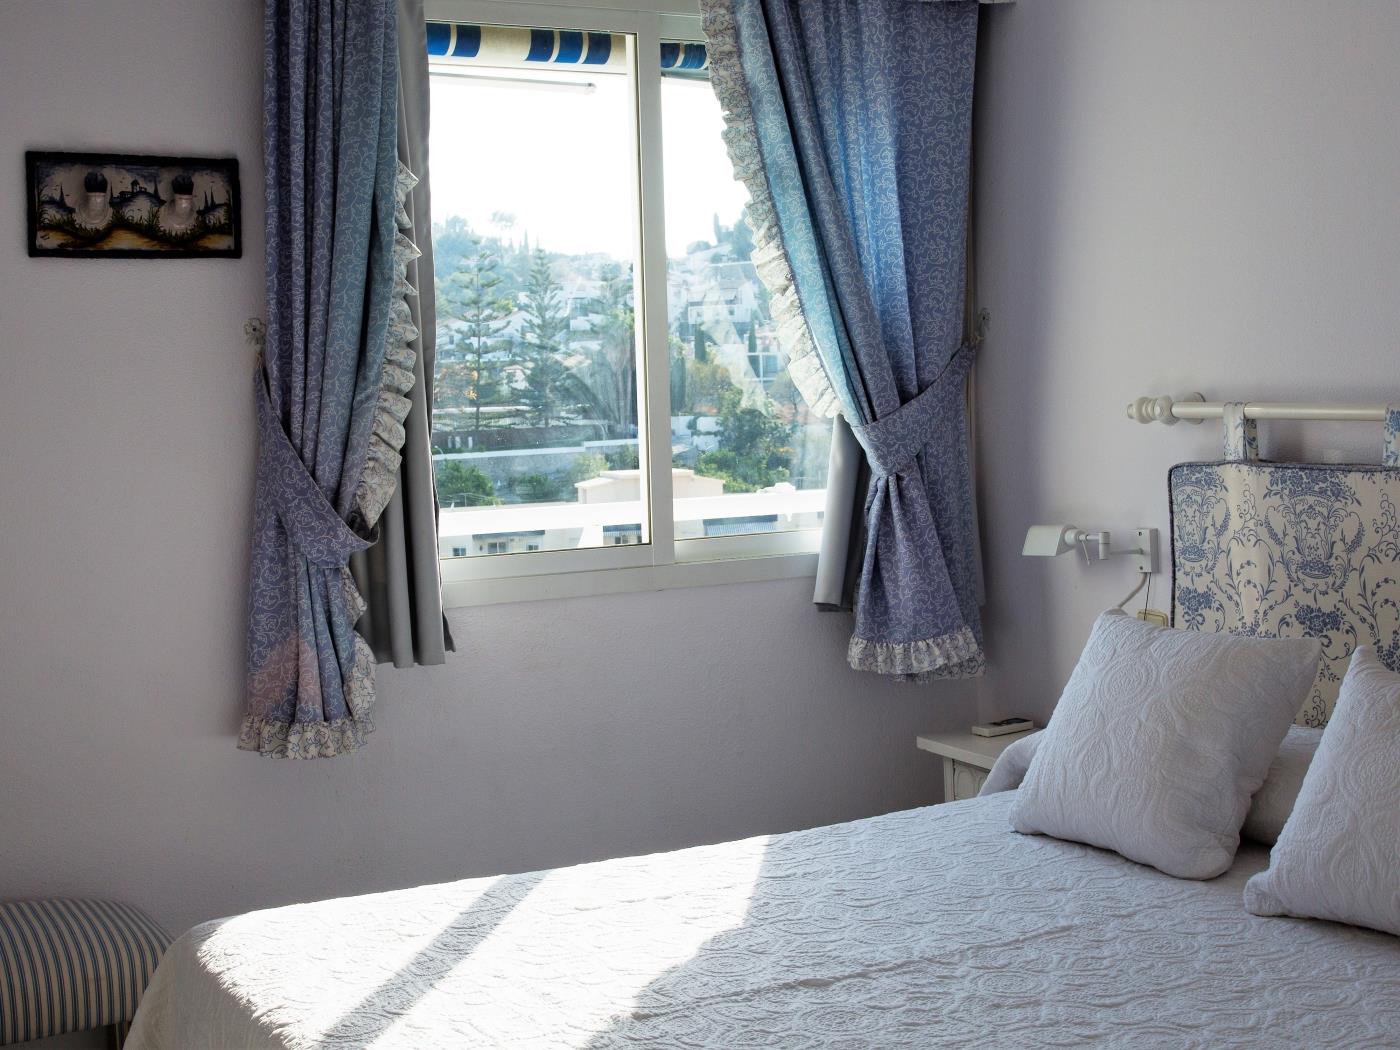 Apto. Velilla. Precioso apartamento con vistas al mar, Almuñecar. en Almuñécar